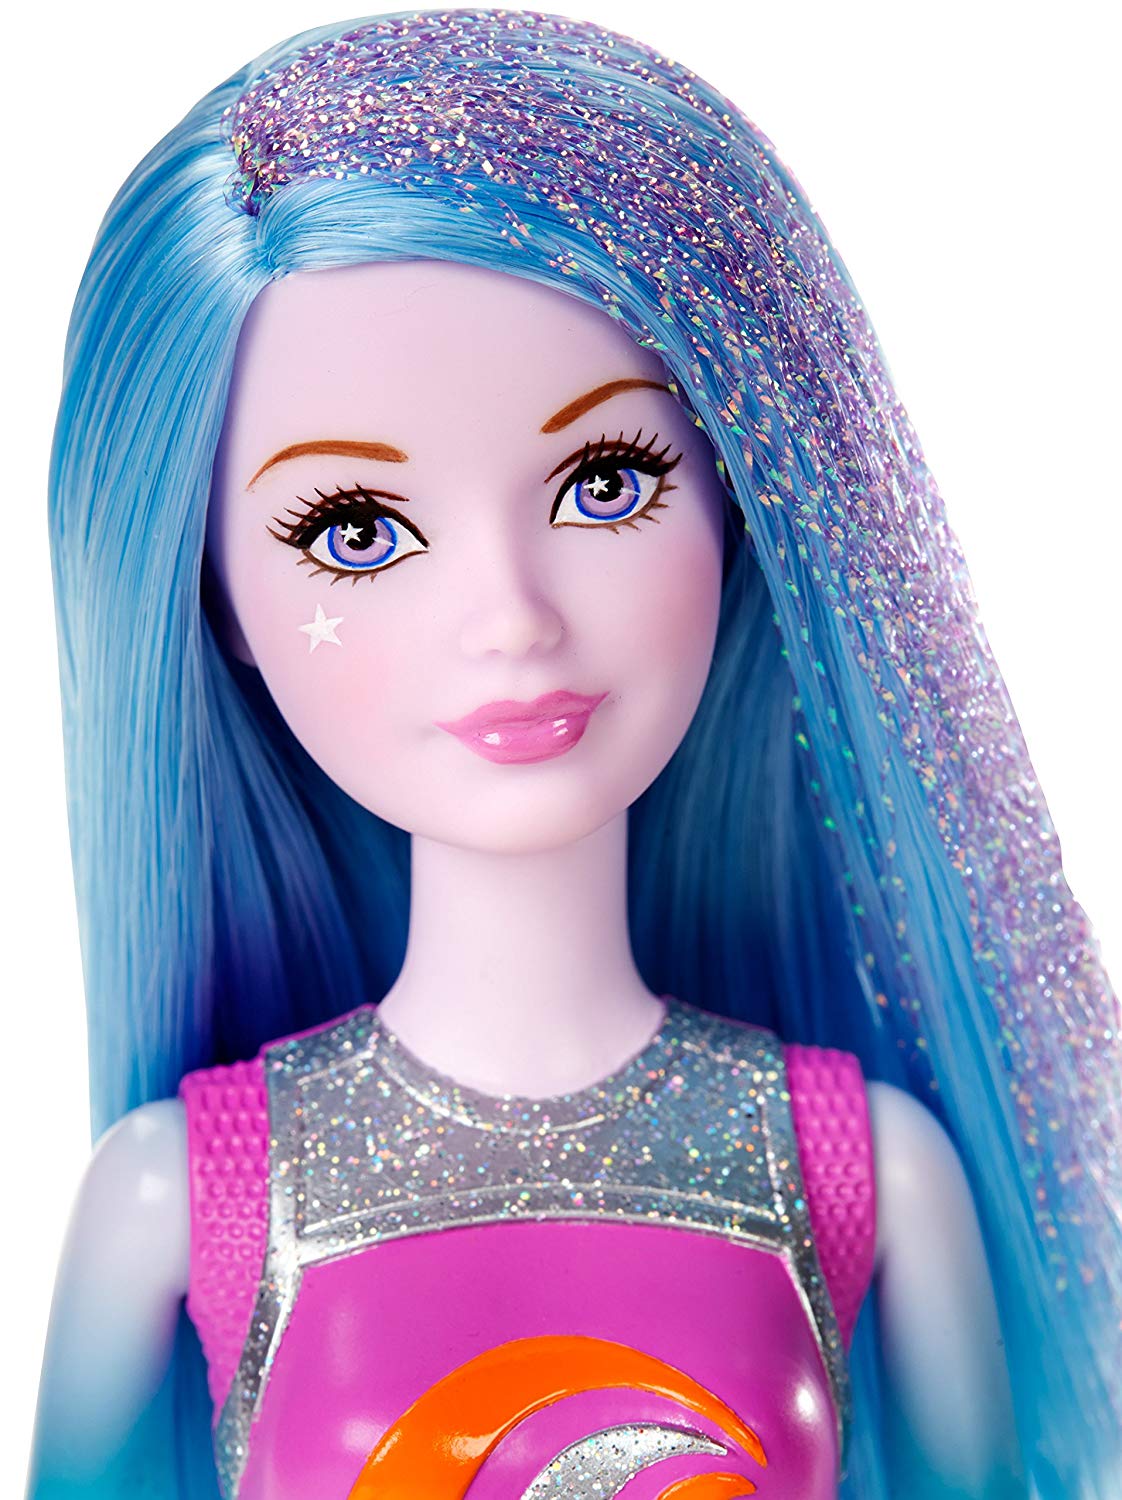 Barbie DLT29 - in "Das Sternen Abenteuer" - Galaktische Zwillinge Sortiment - Blauer Zwilling